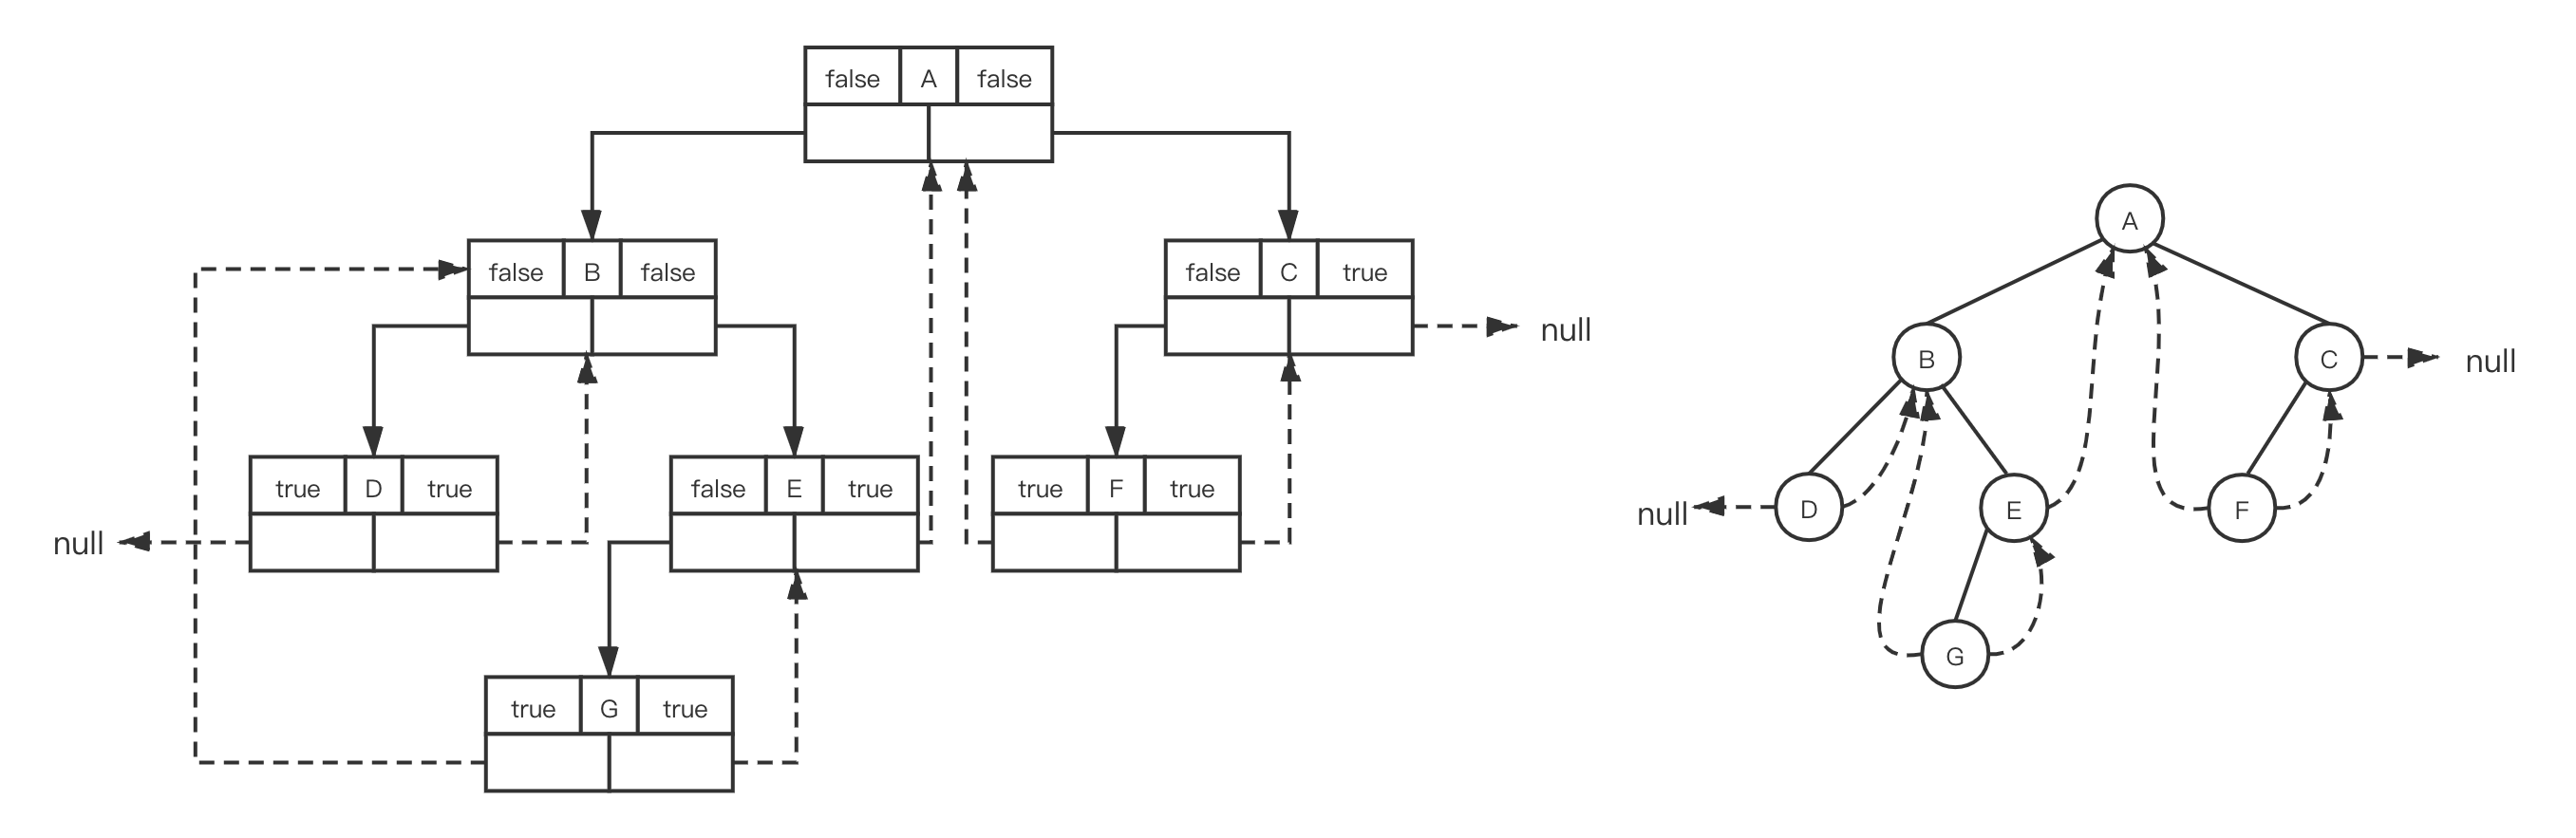 中序线索二叉树例子